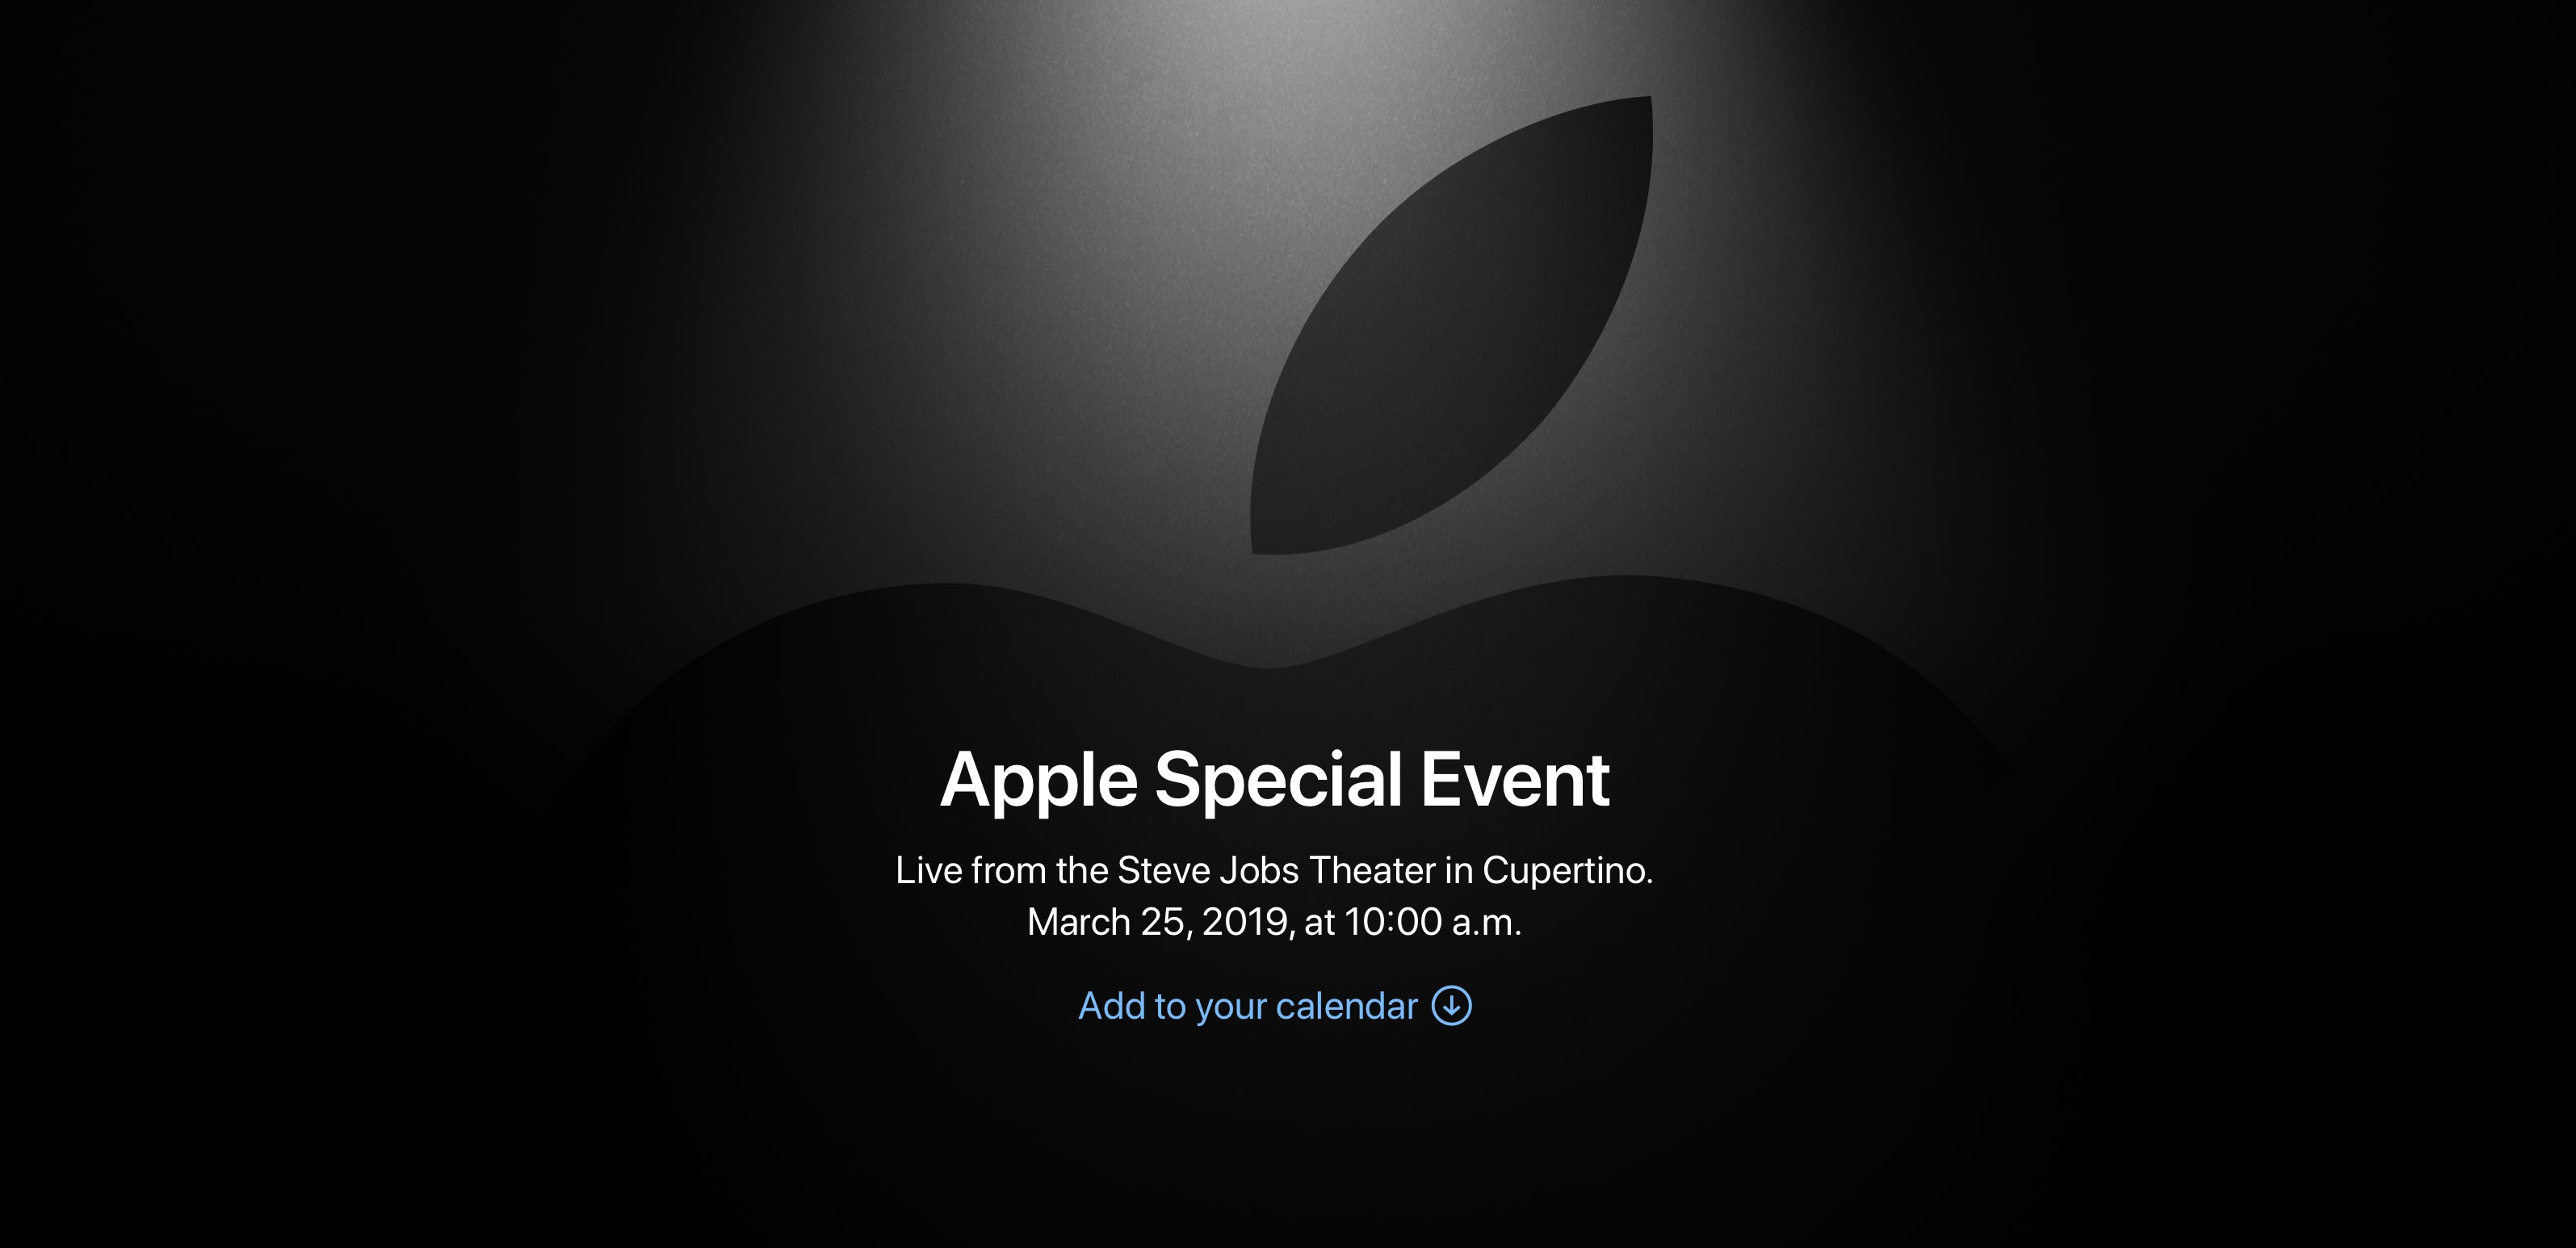 Đã thấy Apple cùng thông báo ấy, sự kiện đặc biệt đúng ngày 25/3, bạn chờ đợi gì?